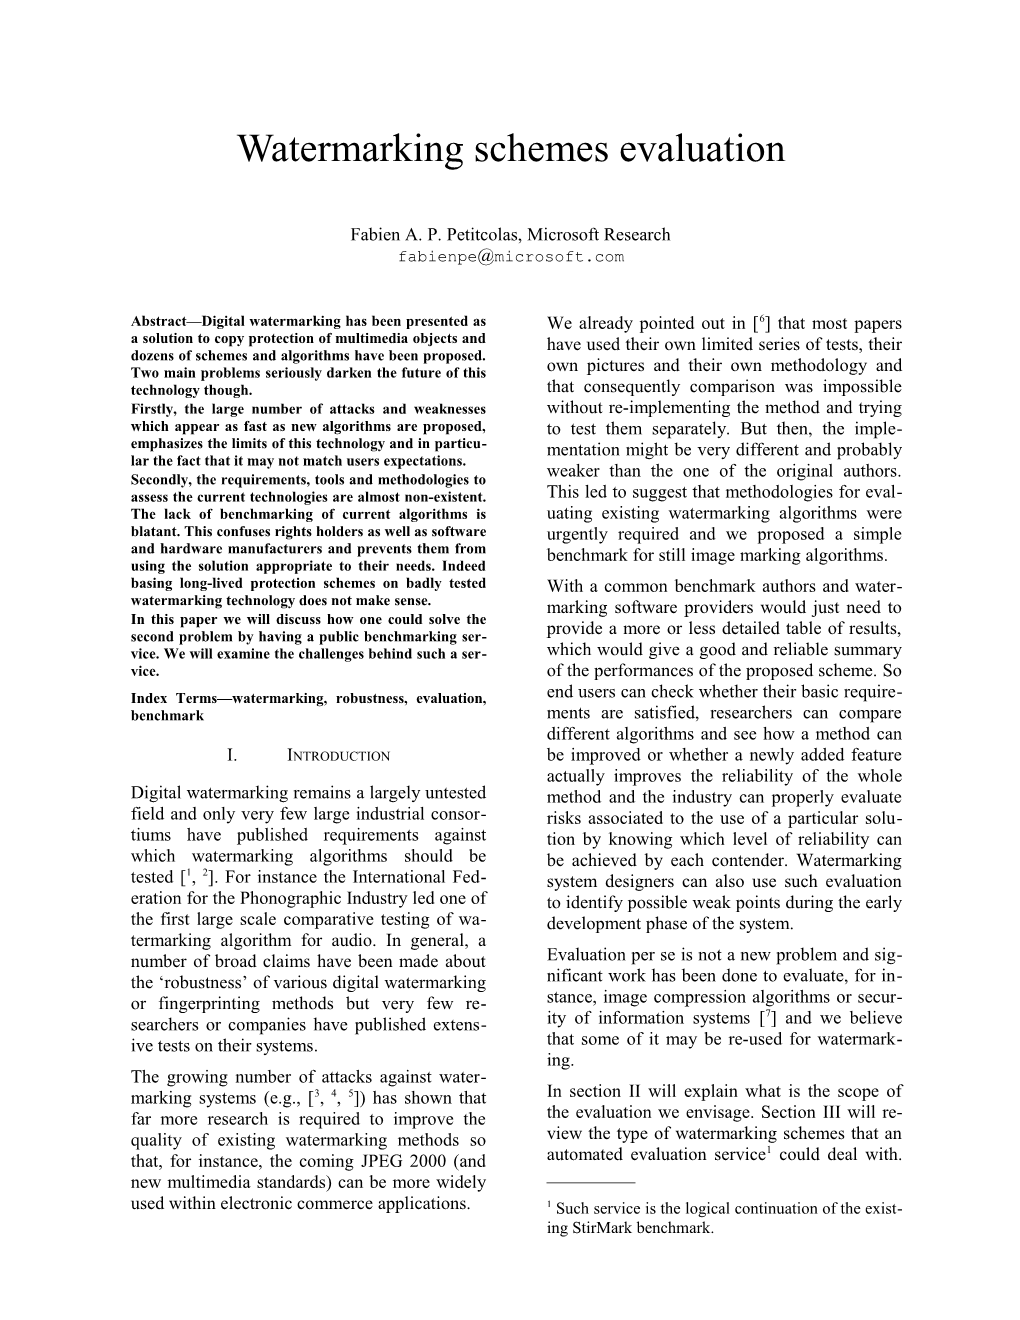 Watermarking Schemes Evaluation